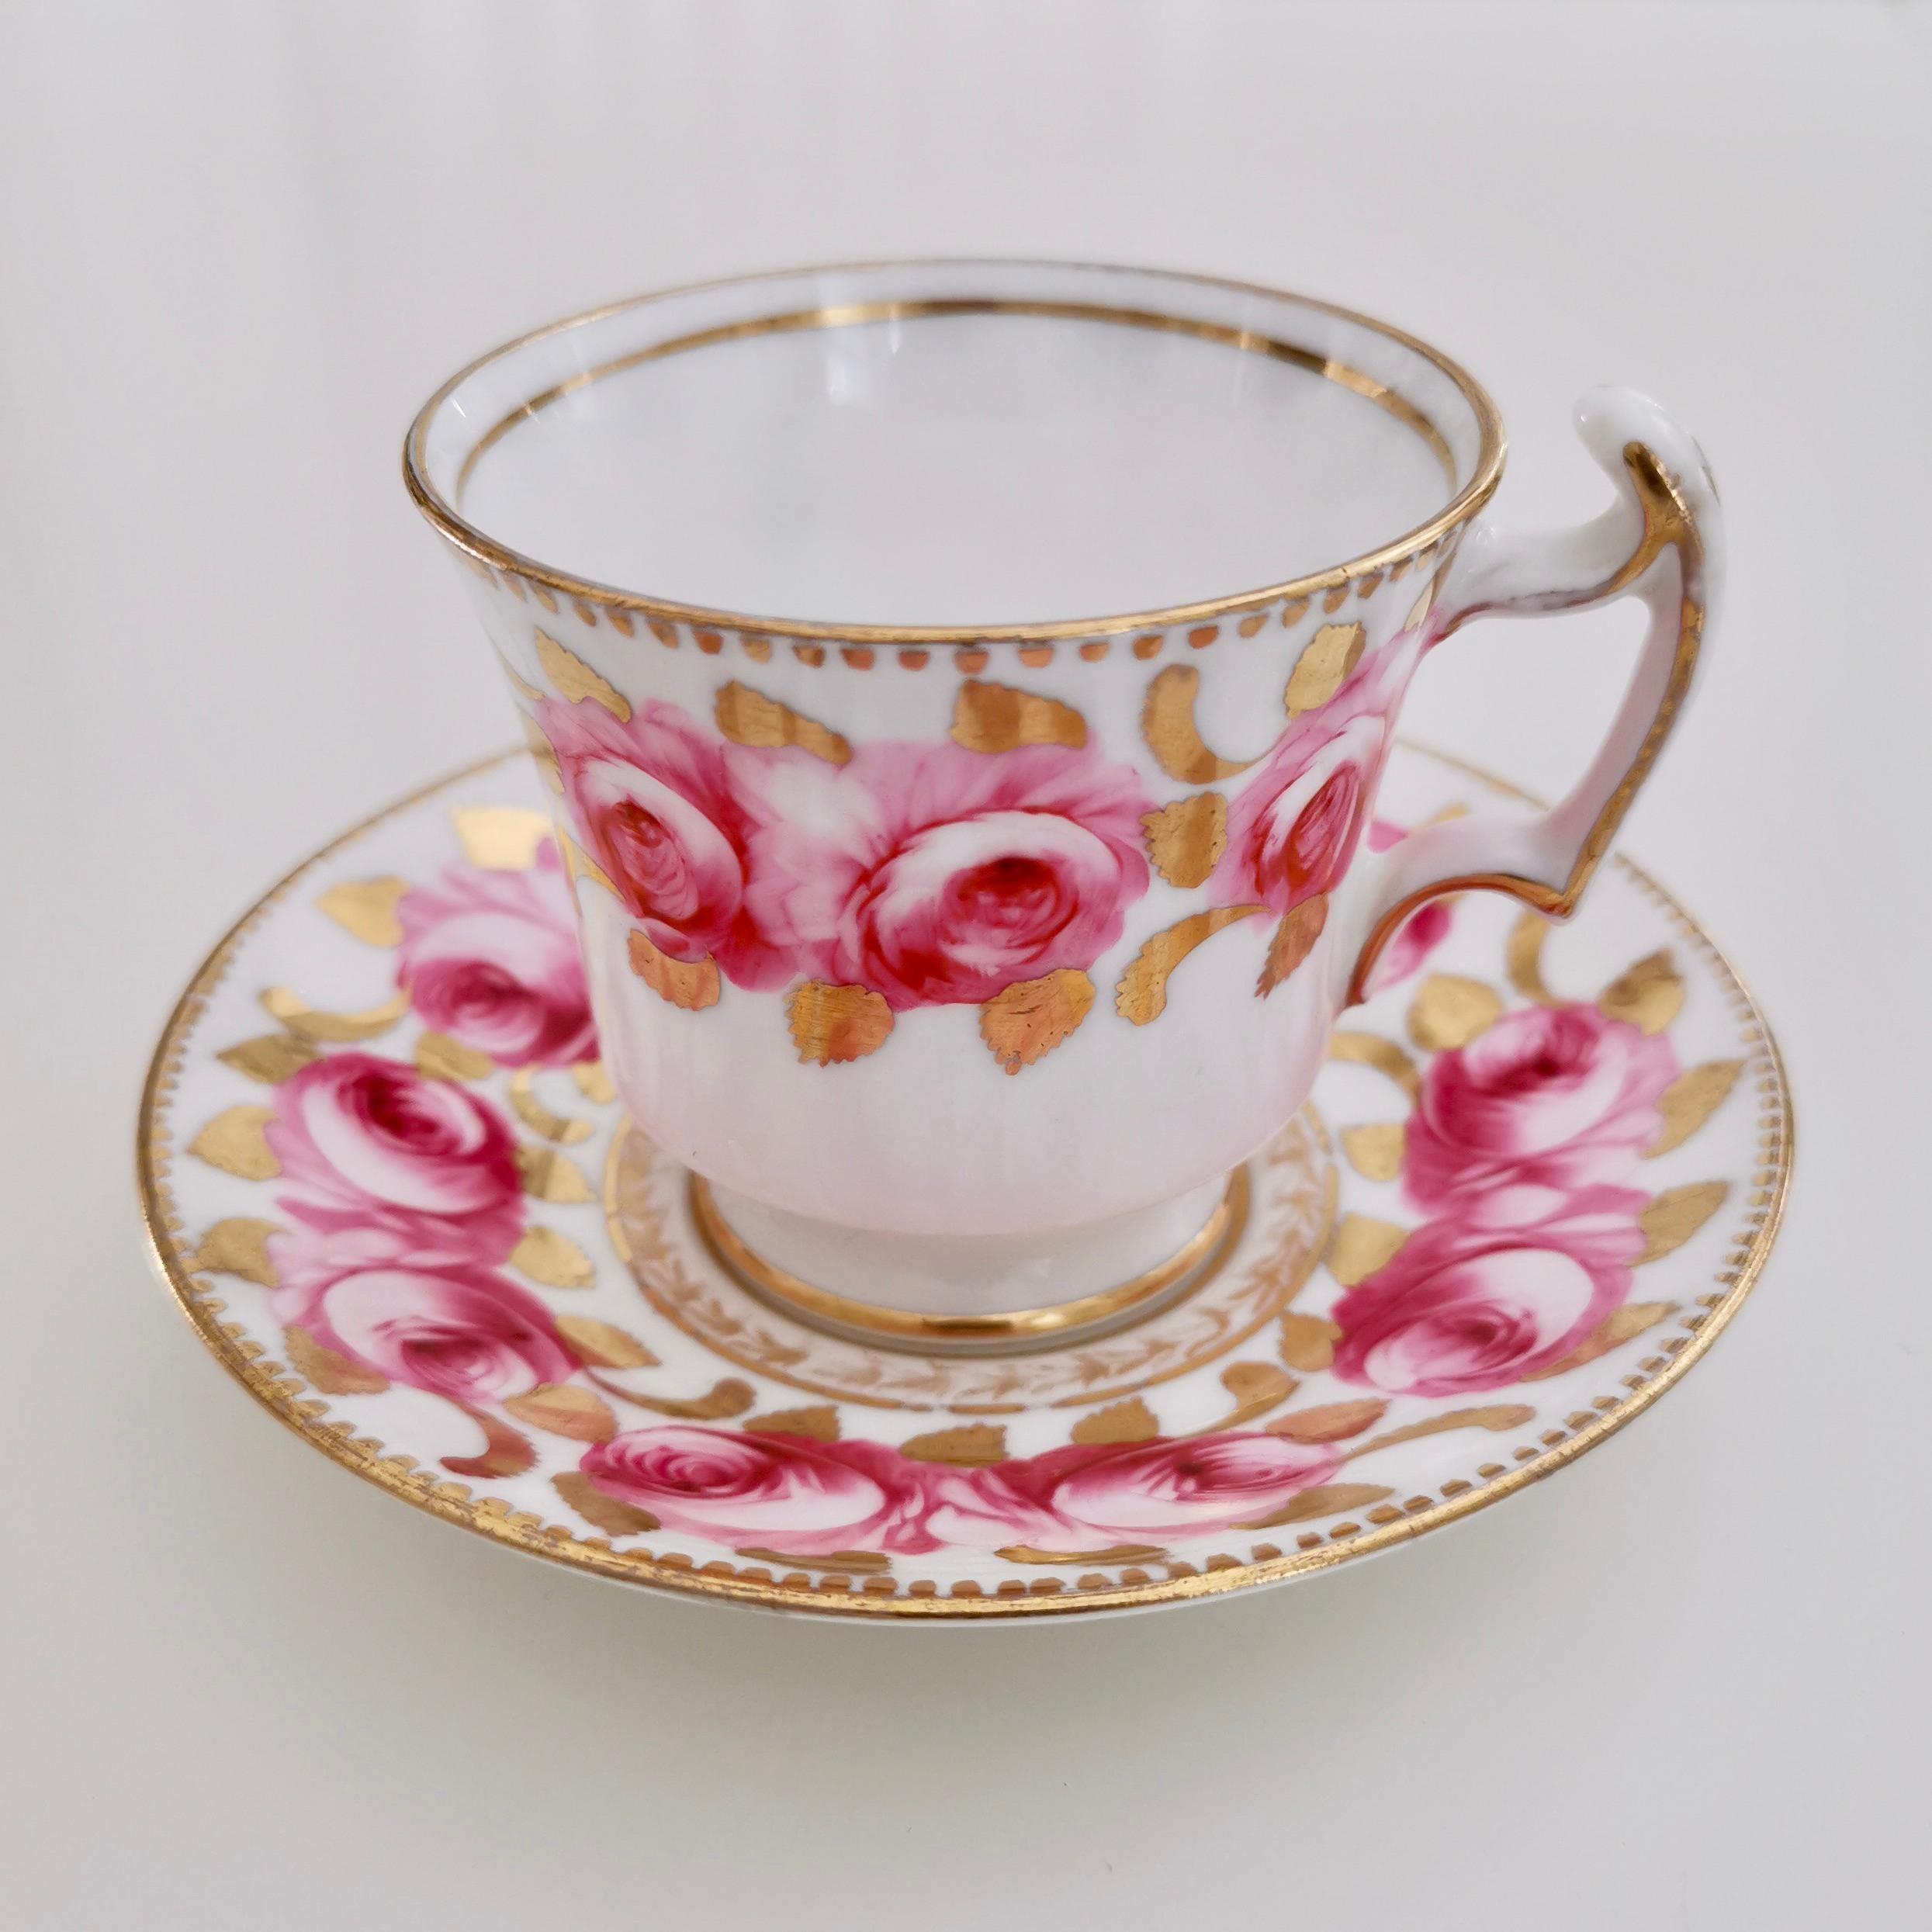 English Romantic Coffee Cup, Pink Billingsley Roses, Regency 1820-1825